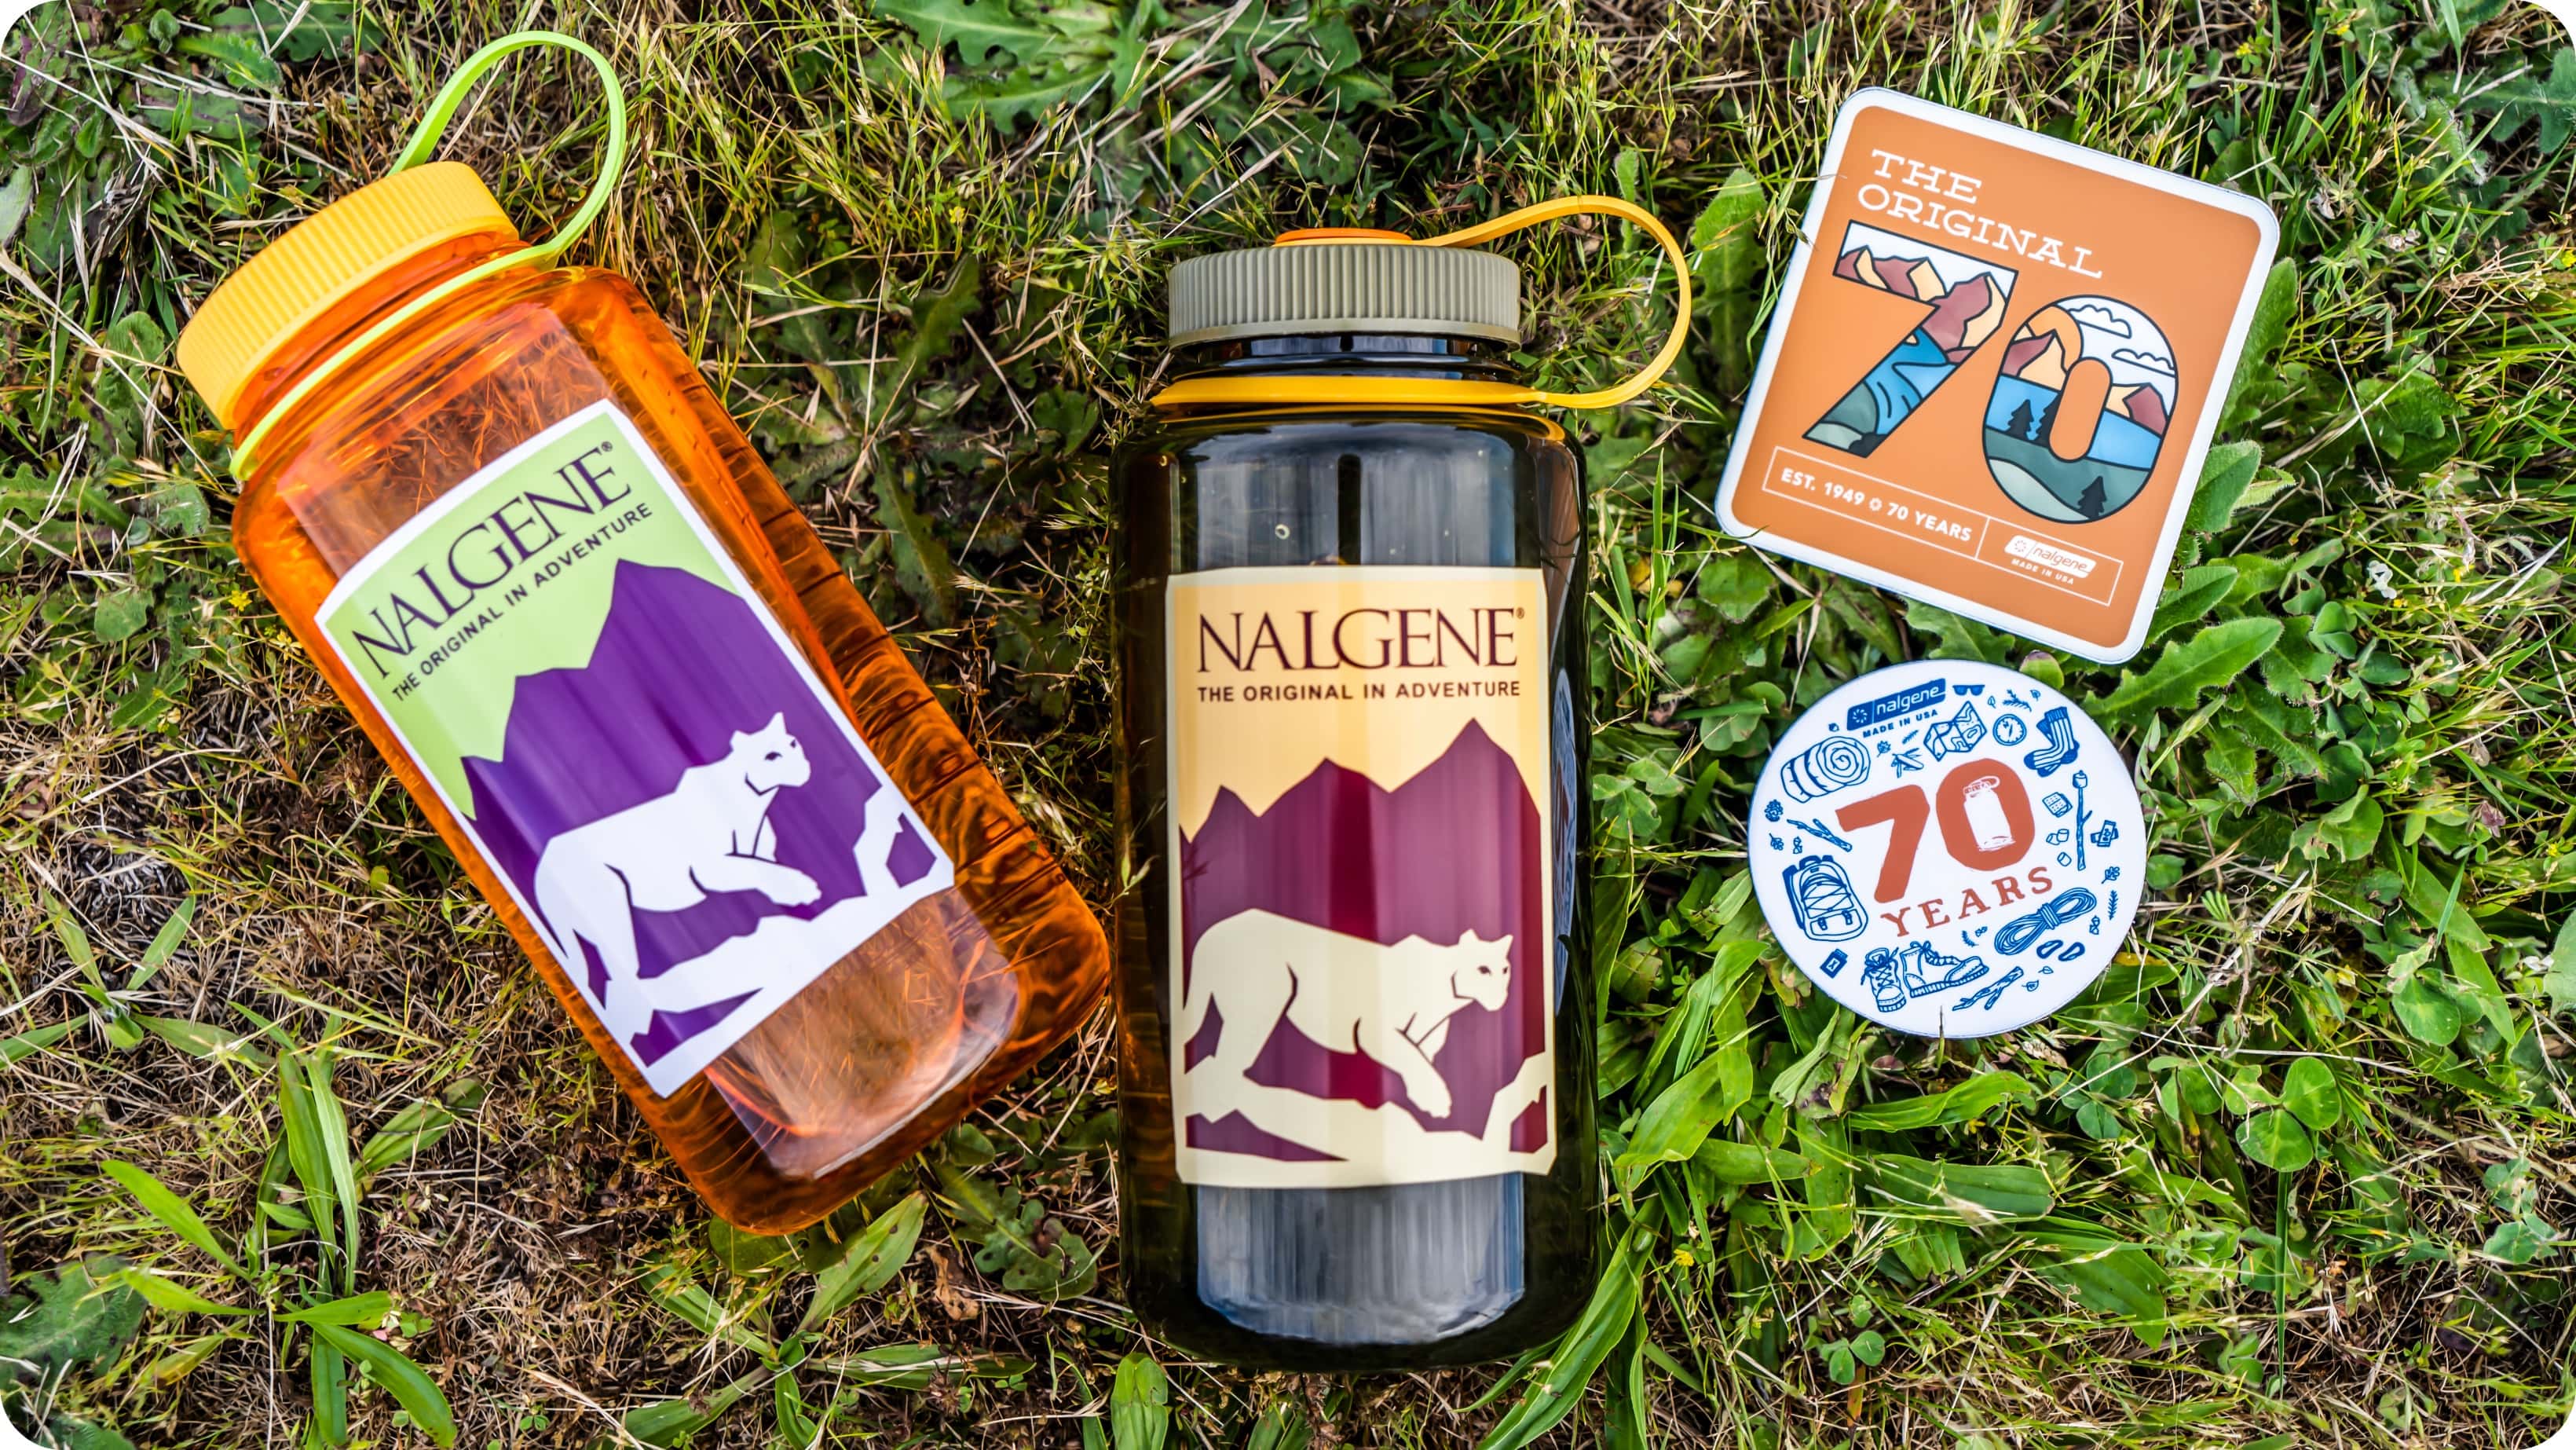 Nalgene water bottles laying in grass next to Nalgene stickers